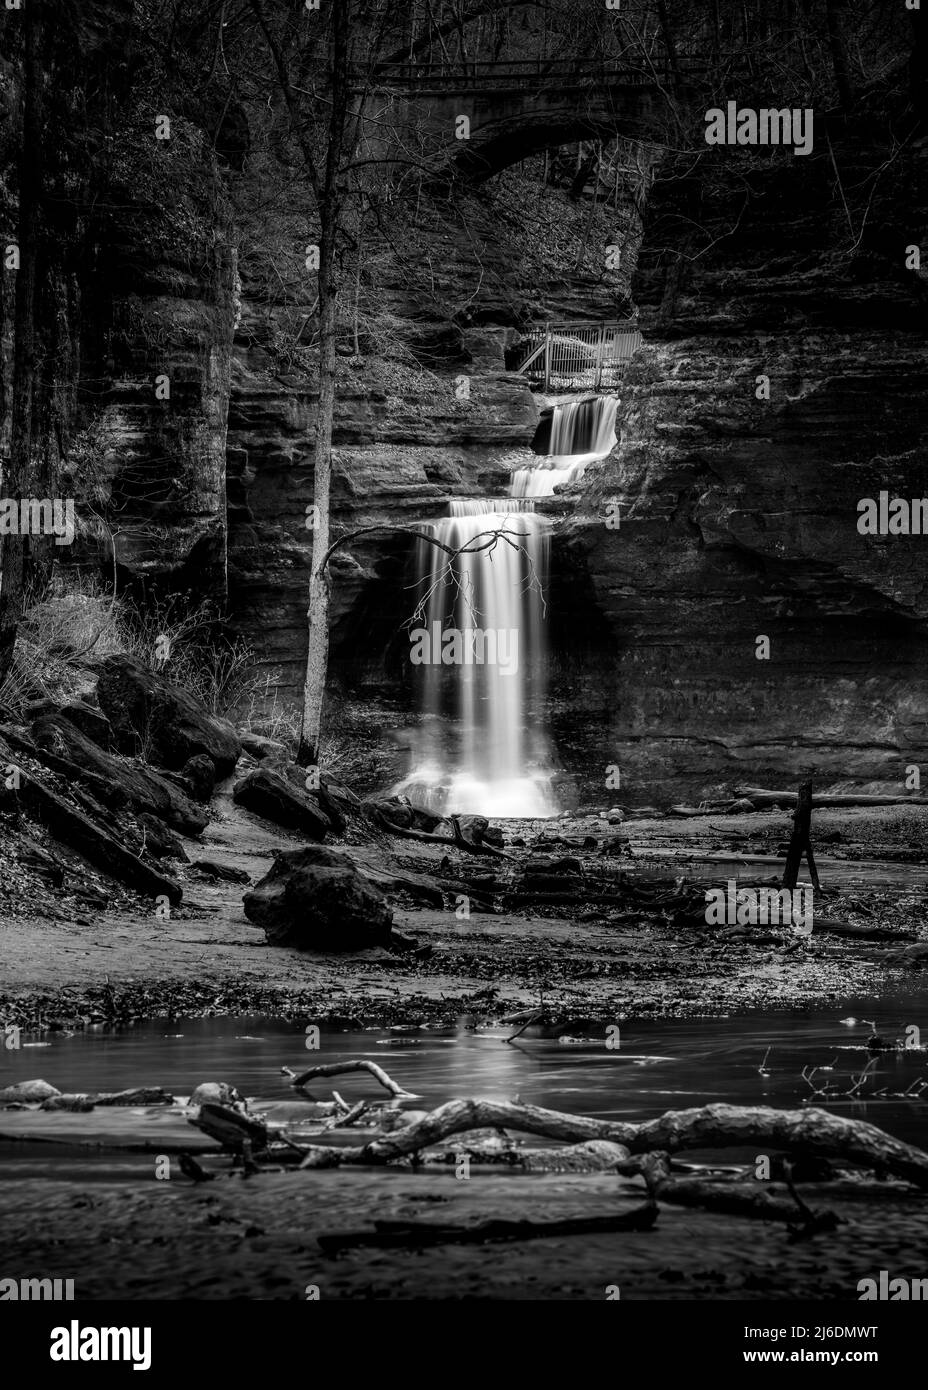 Foto a lunga esposizione di una cascata e di Lower dells in un canyon ardesia al Matthiessen state Park in Illinois Foto Stock